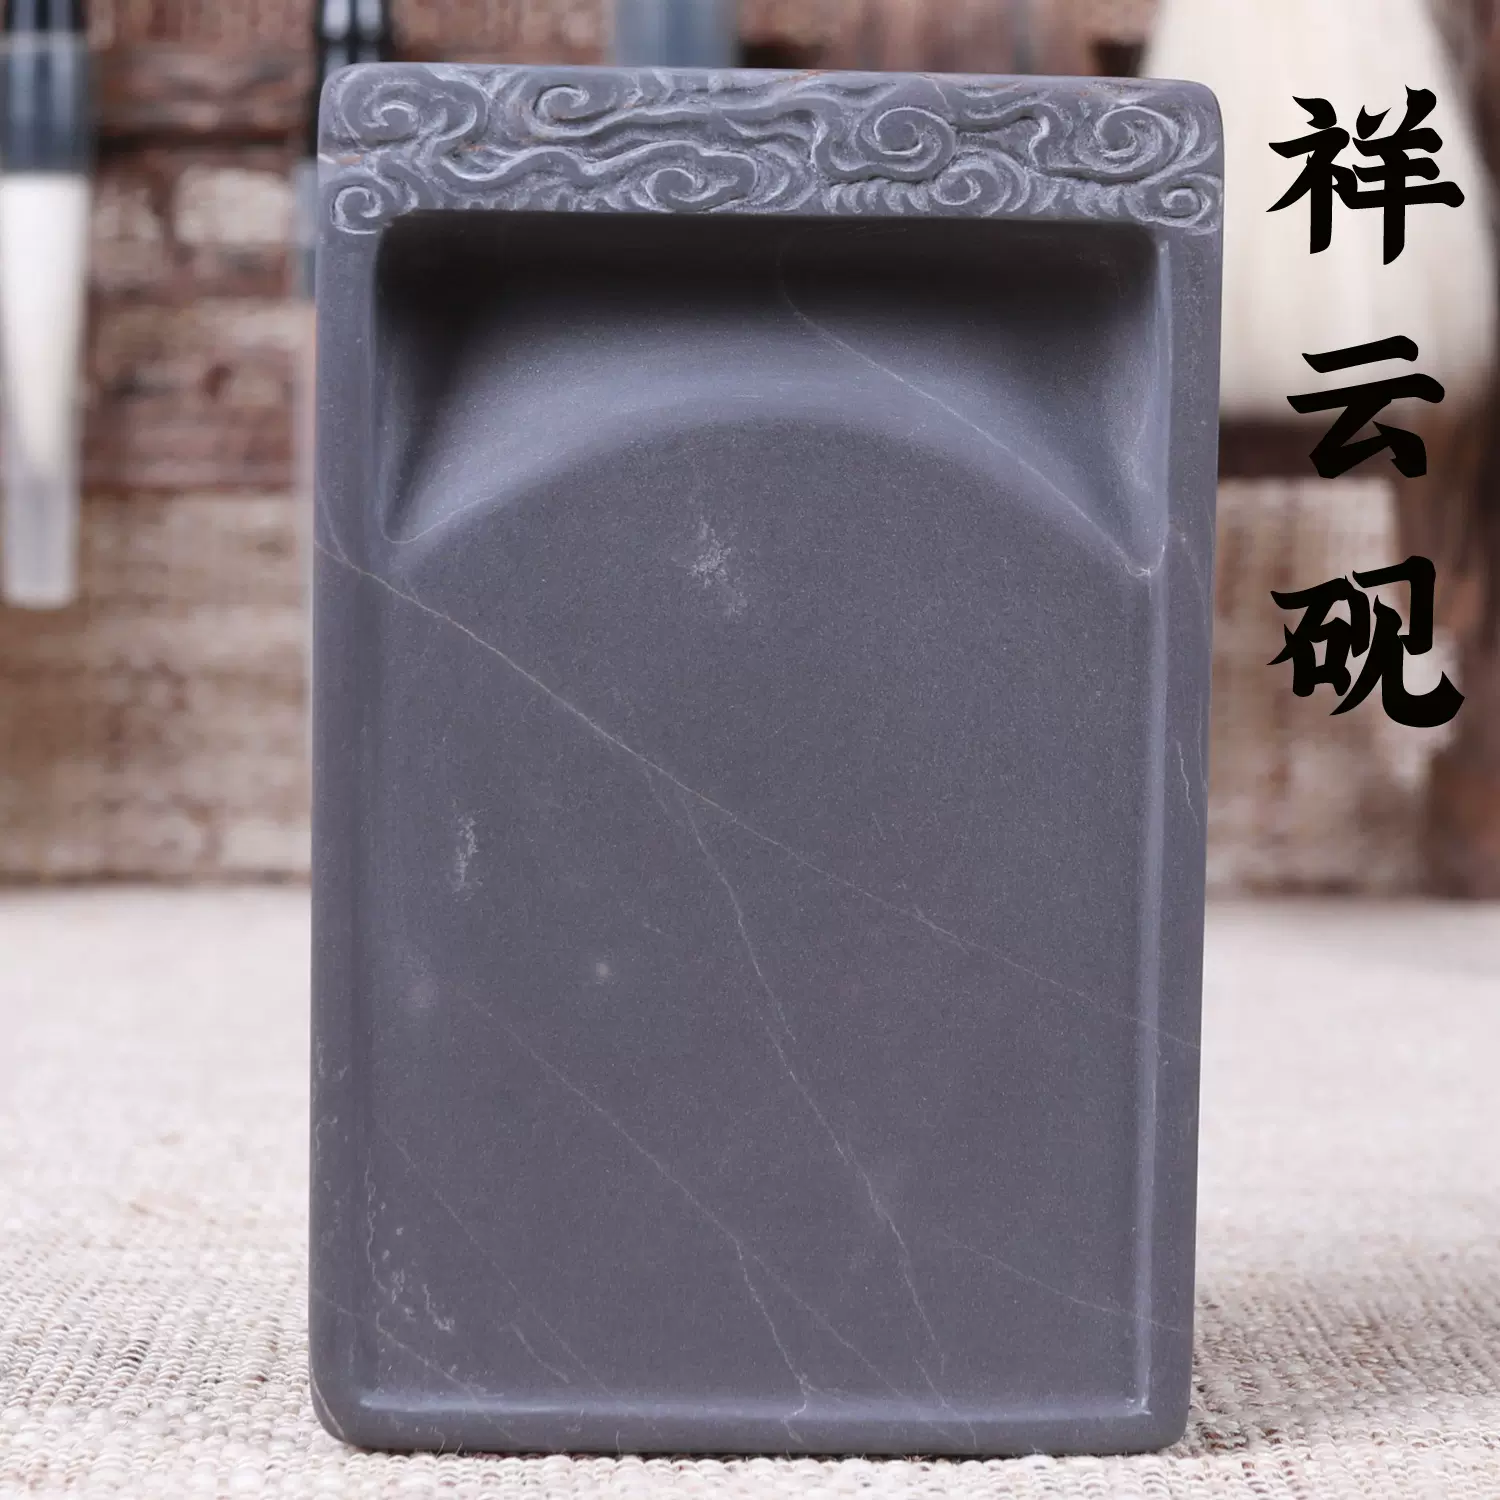 端砚-云月砚（坑仔岩端砚）巨型石眼、非常难得、十分精彩的精品-Taobao